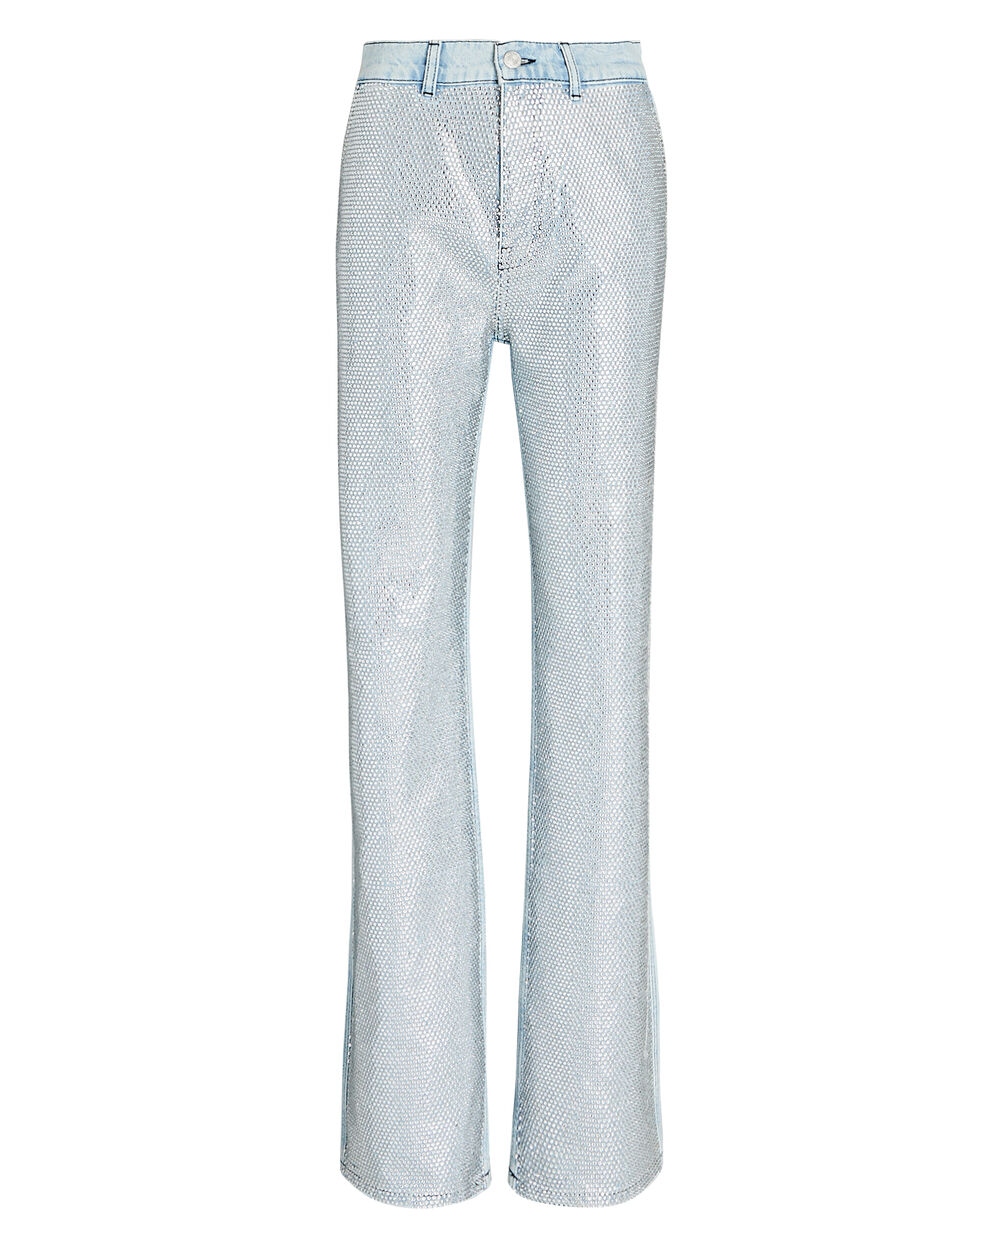 råd Insister Express FRAME Le Jane High-Rise Embellished Jeans In Blue | INTERMIX®